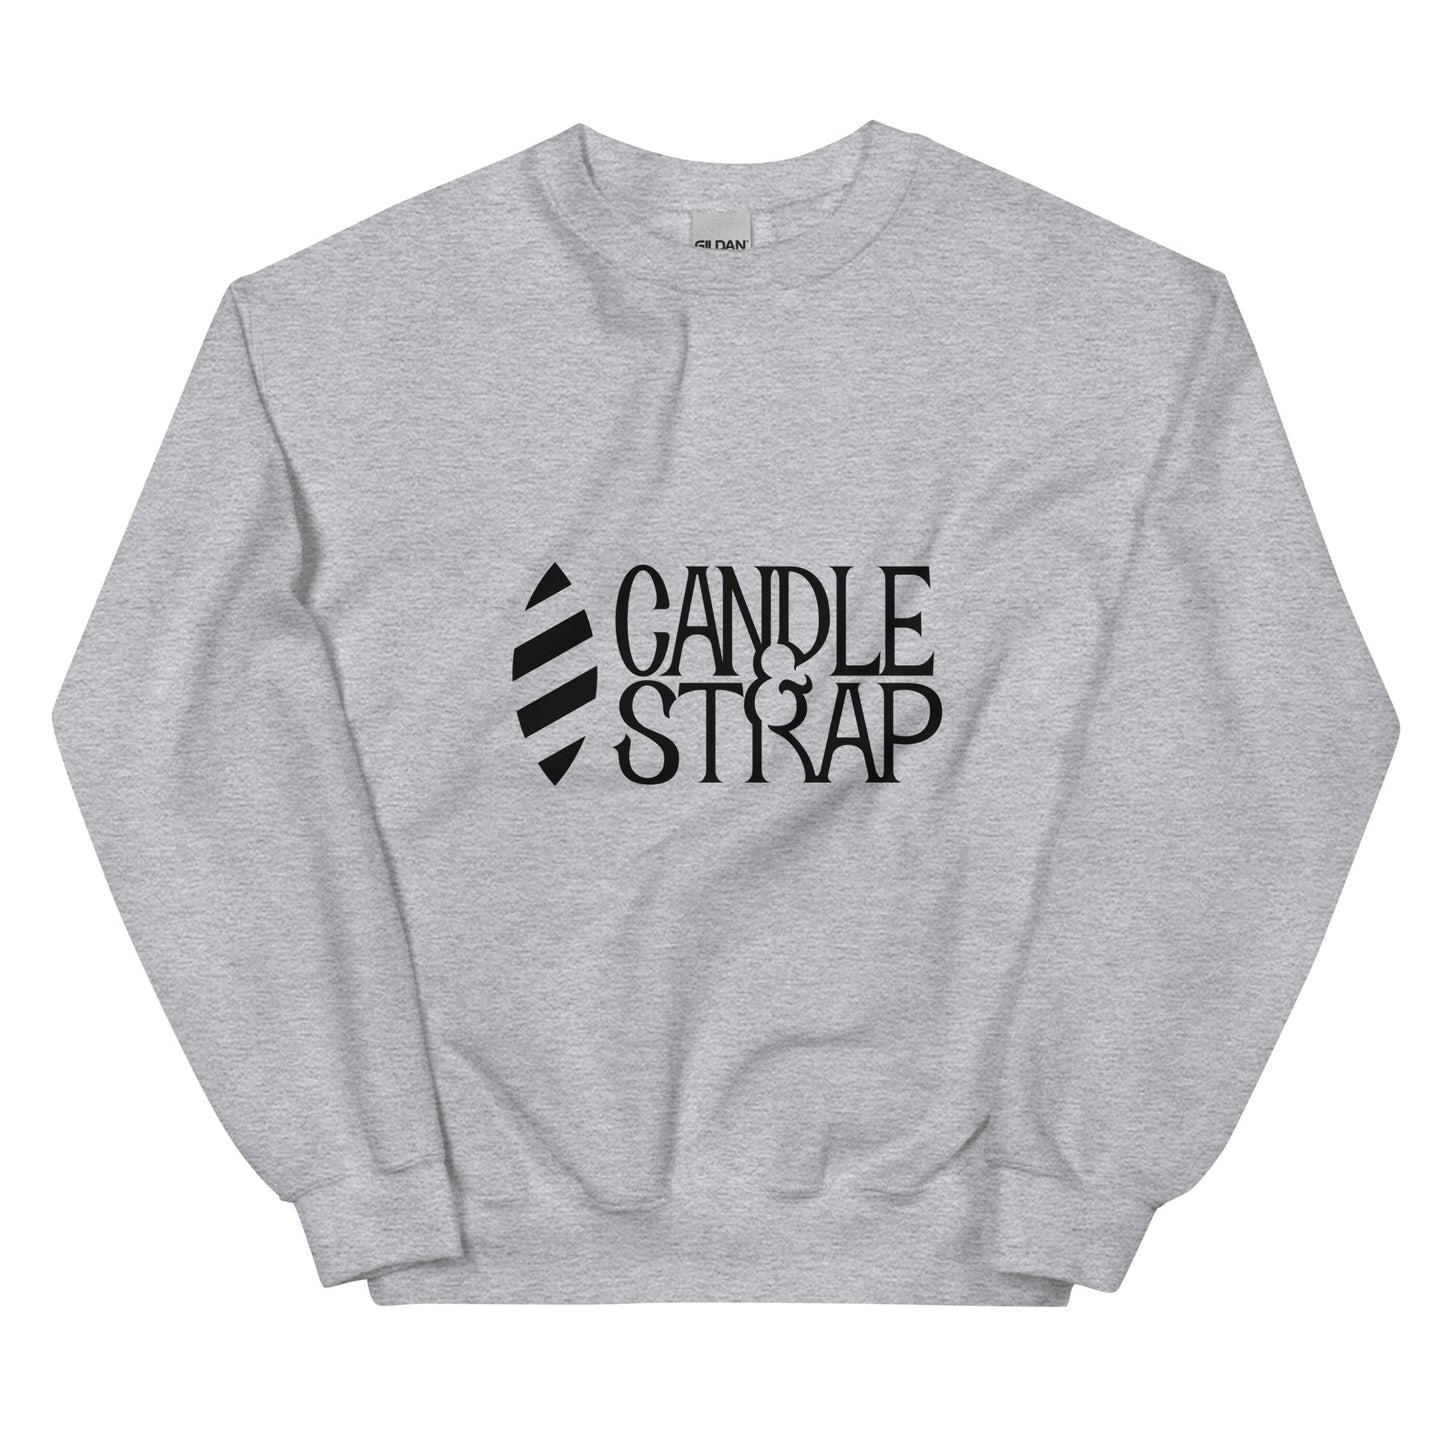 Candle & Strap - Unisex Sweatshirt